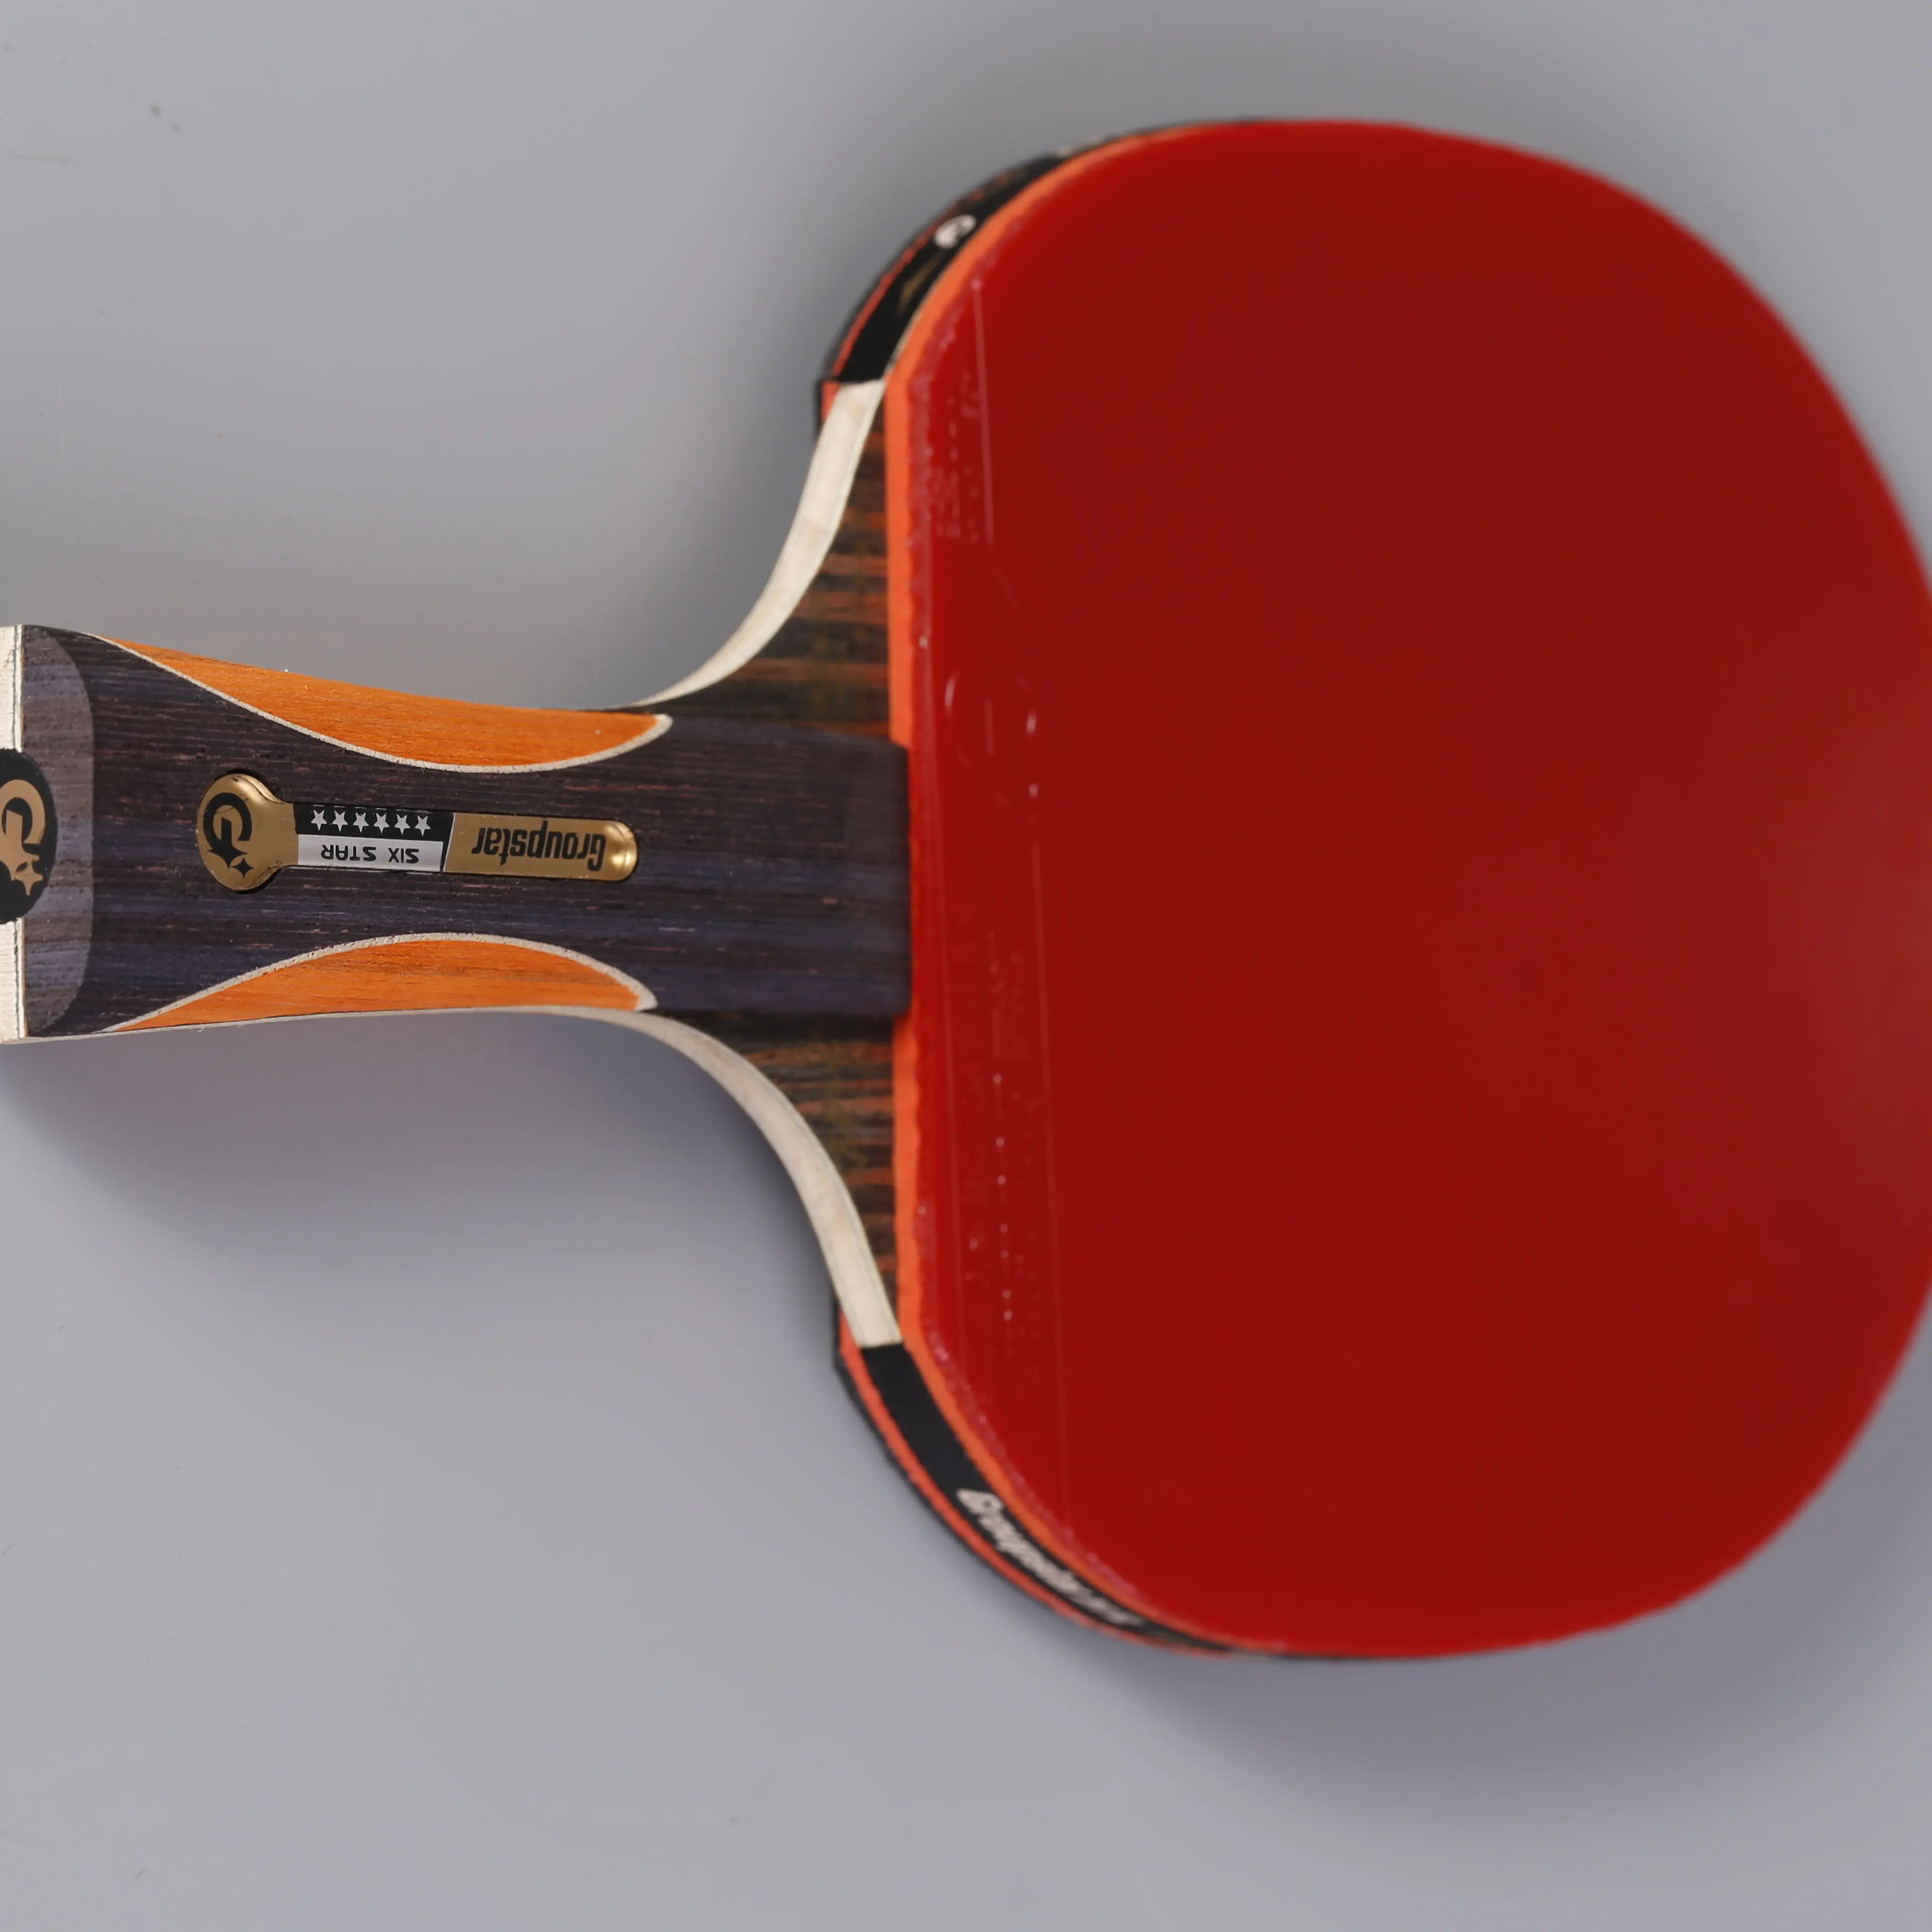 Juego de tenis de mesa para entrenamiento profesional, nueva marca China, pala portátil original